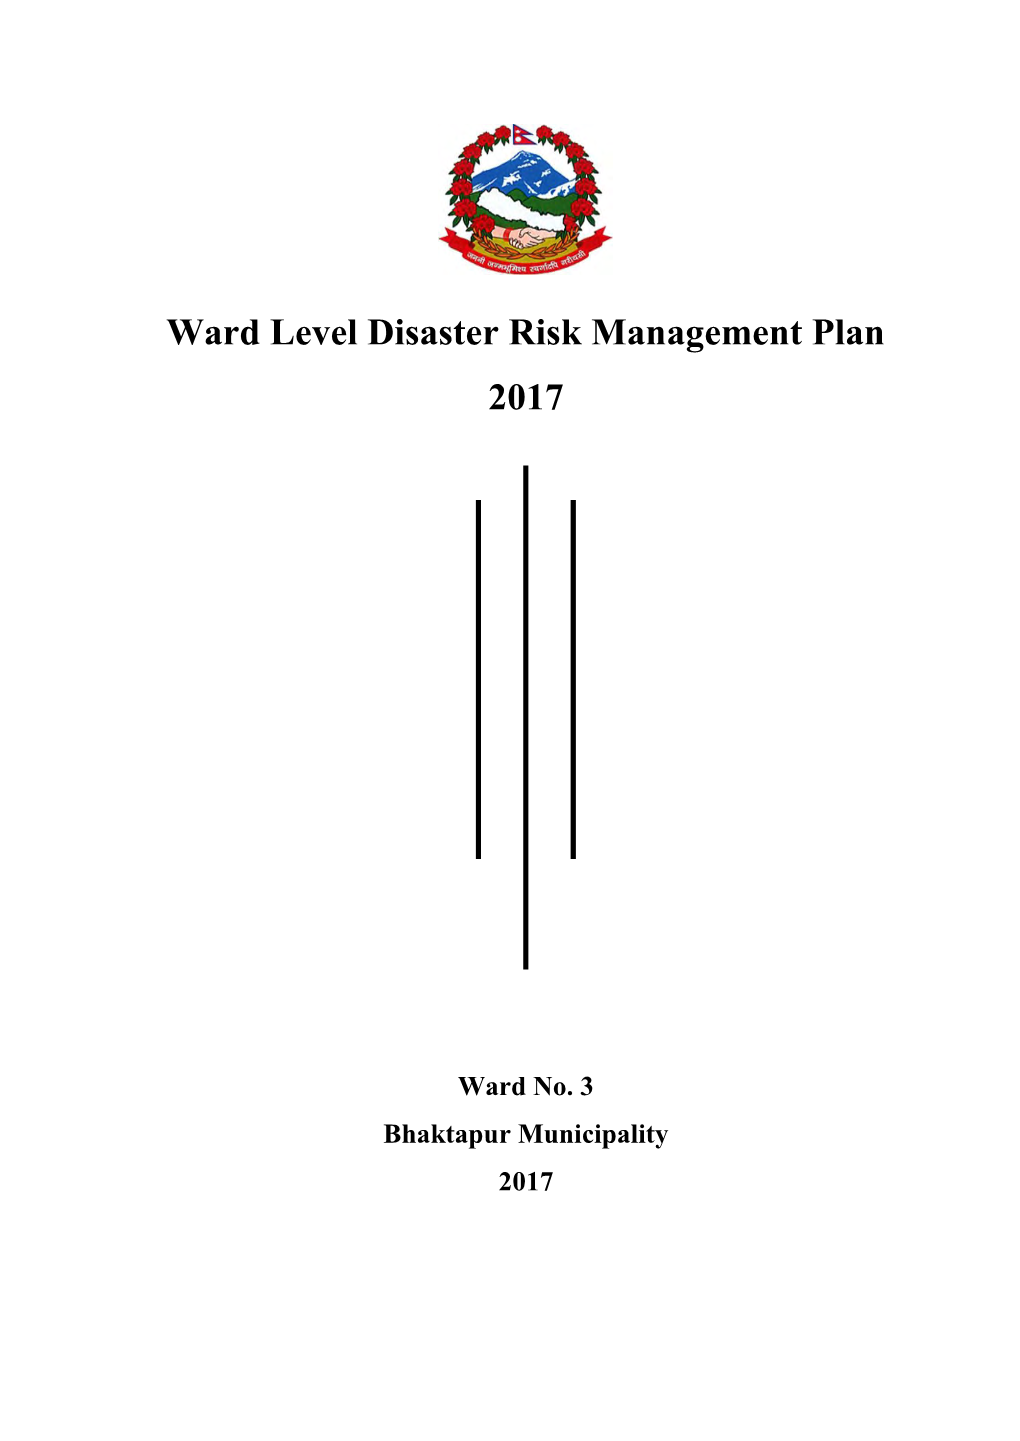 Ward Level Disaster Risk Management Plan 2017